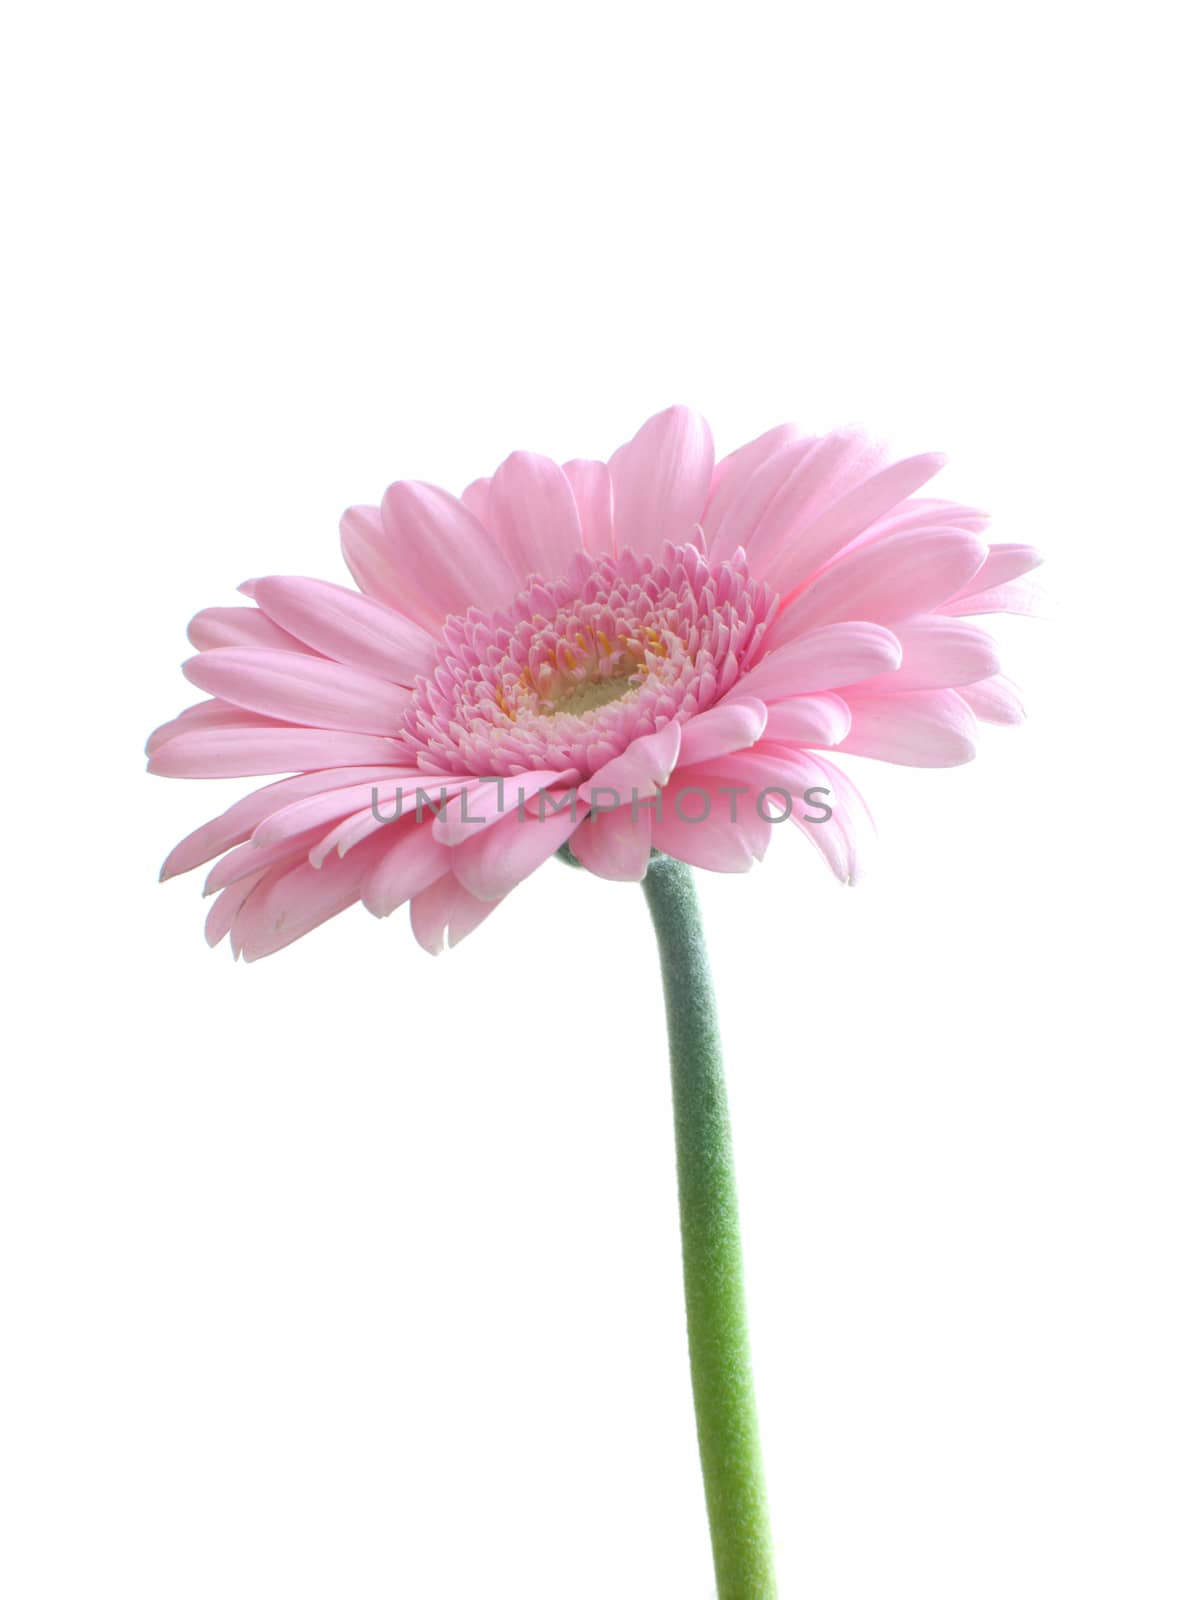 Pink daisy by unikpix